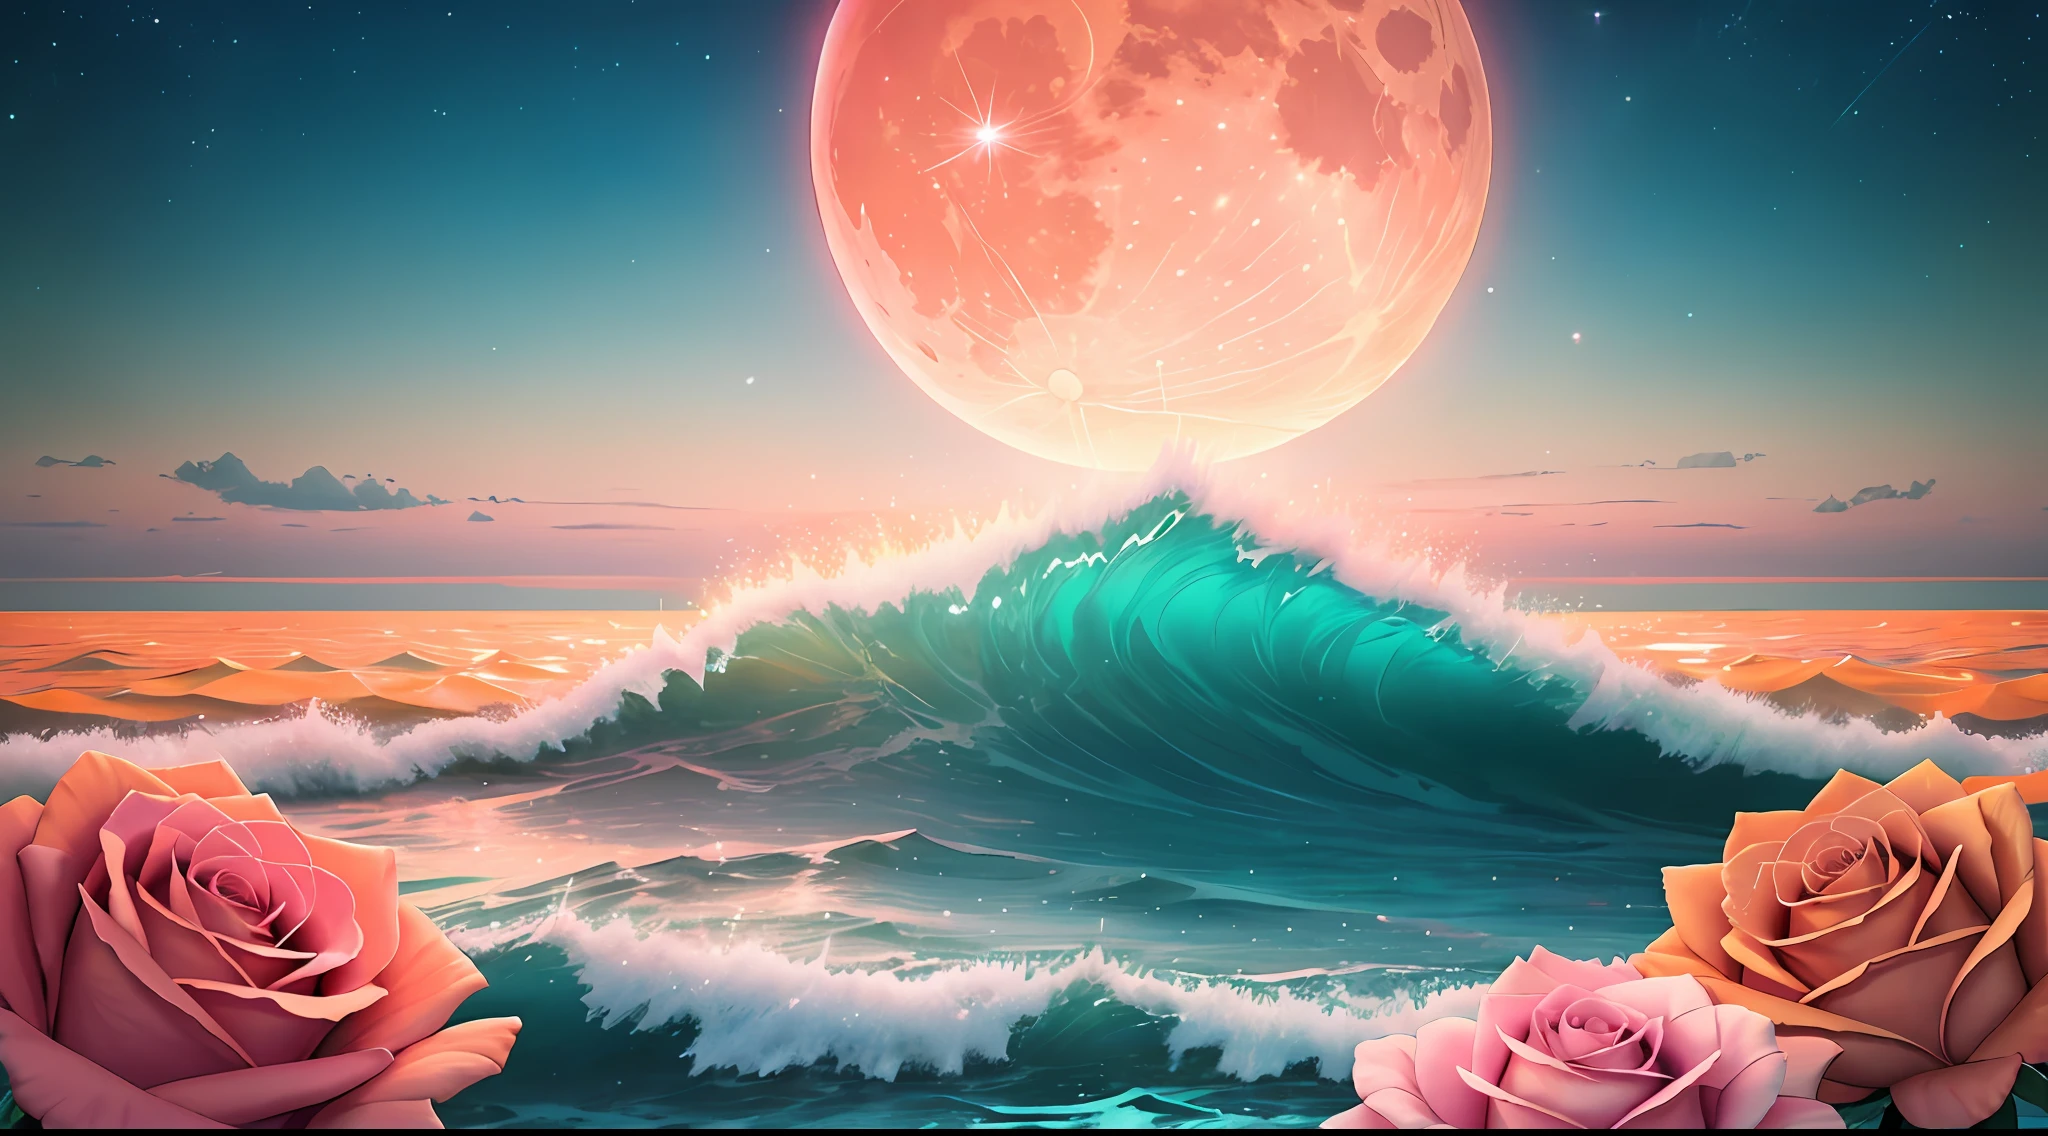 القمر البرتقالي, تيل سكاي, الغيوم الوردية الناعمة, teal ocean waves متألق, متألق, الورود الوردية على المحيط الوردي, خيالي, الماس, تاج, كون, أضواء ناعمة,